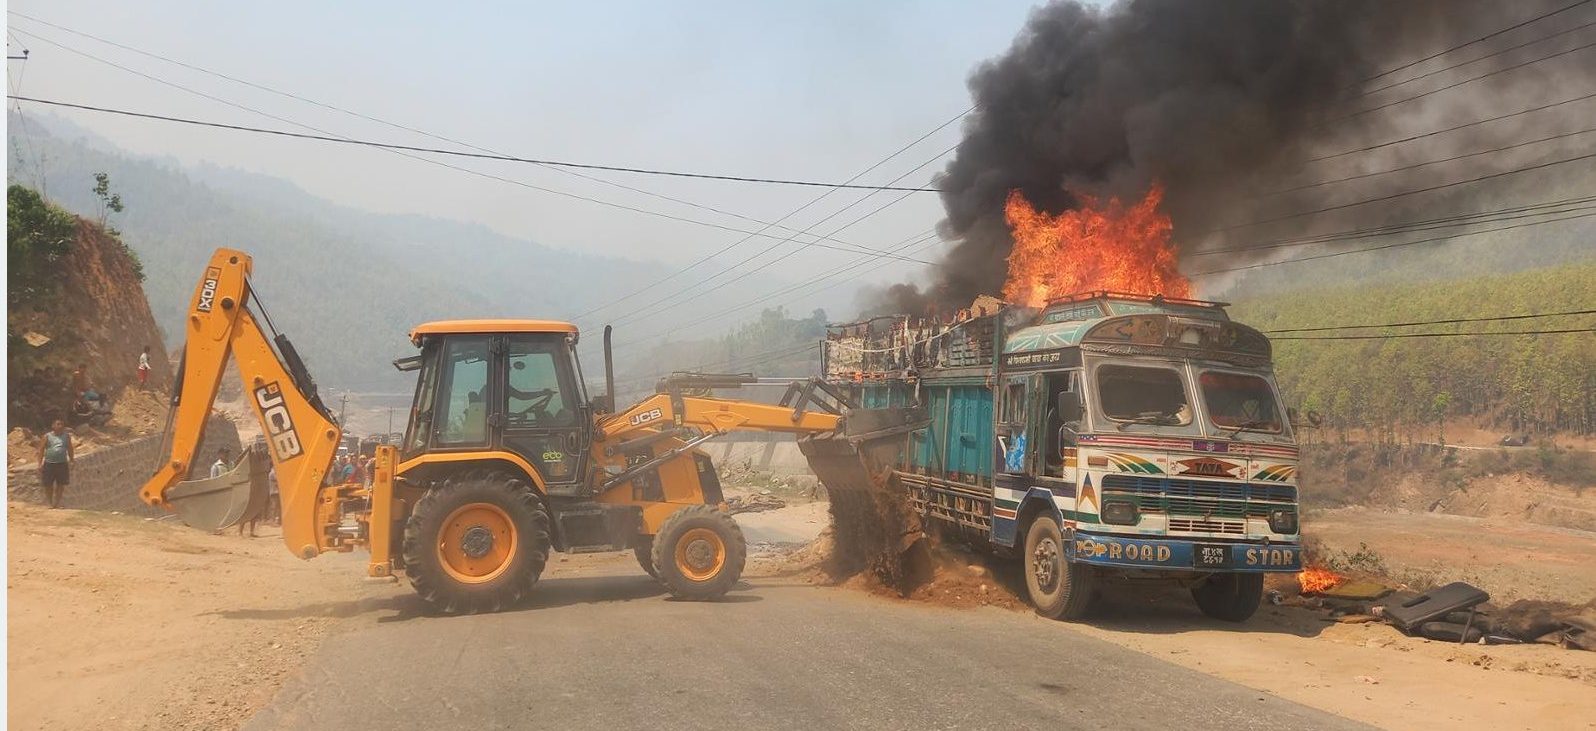 Truck blaze in fire  at Banchhetar